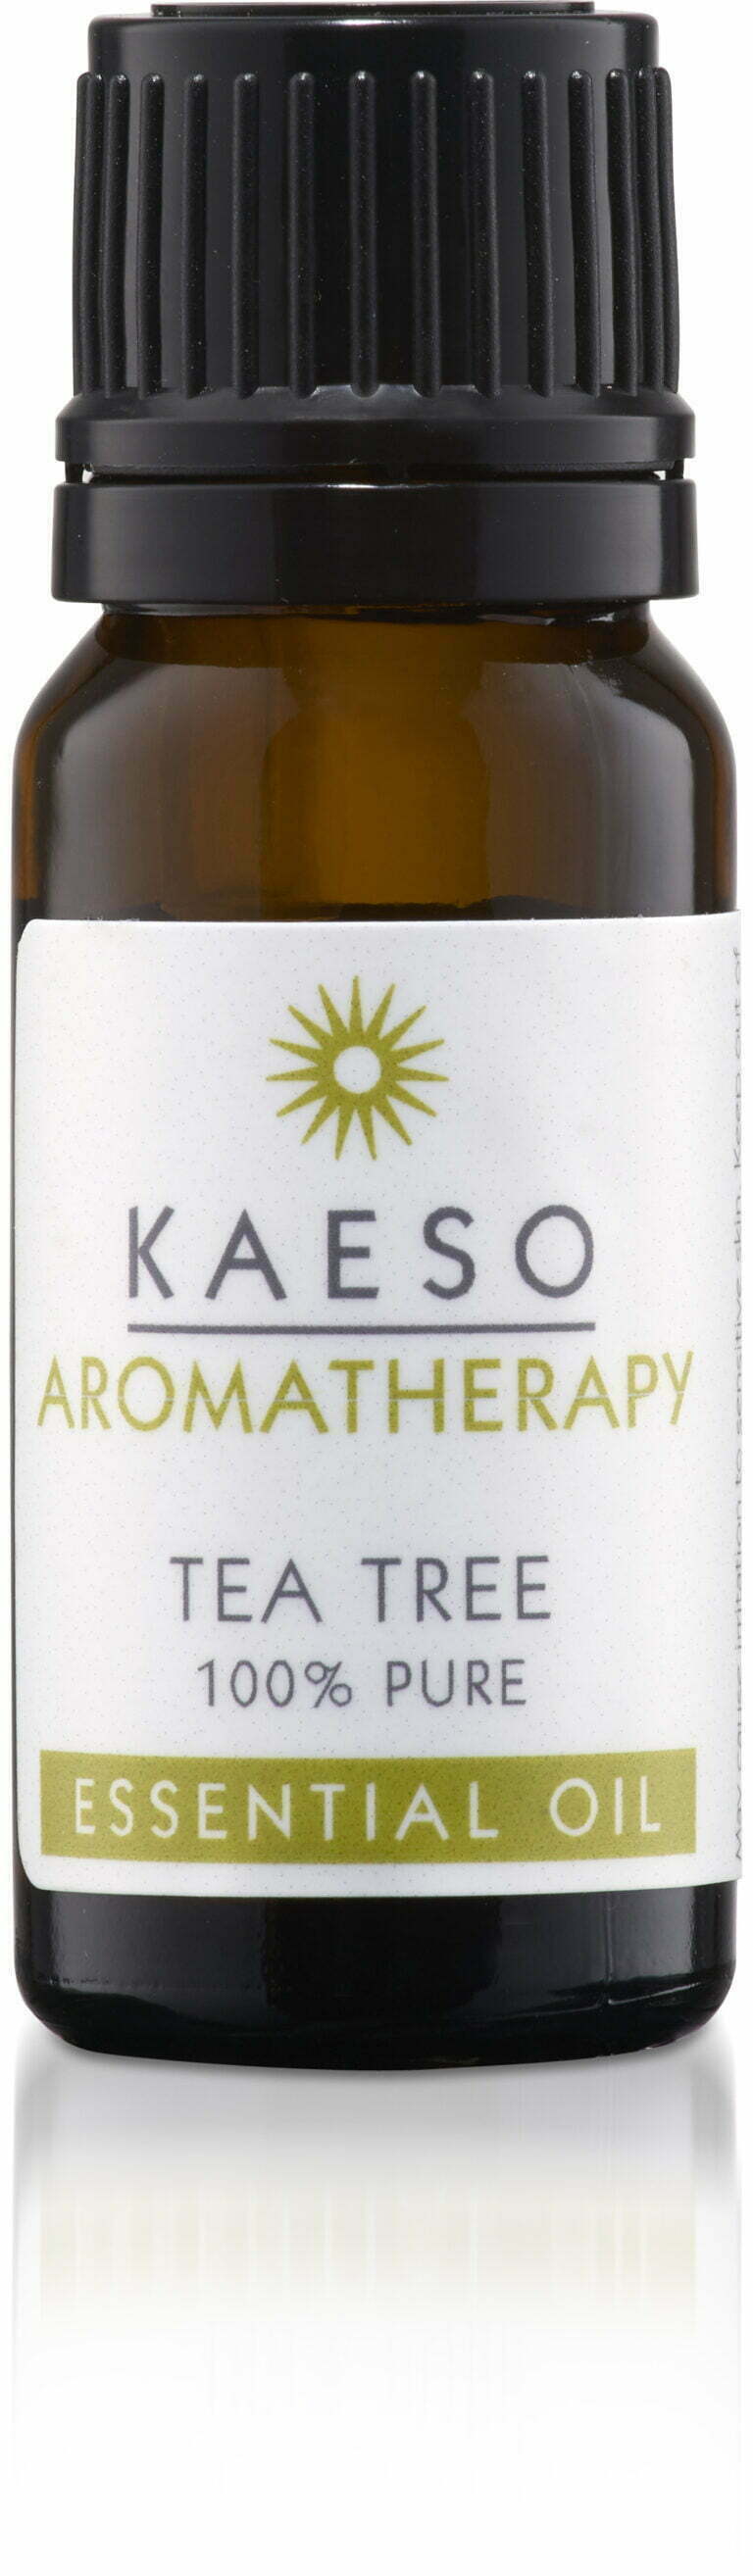 Kaeso - Tea Tree Oil